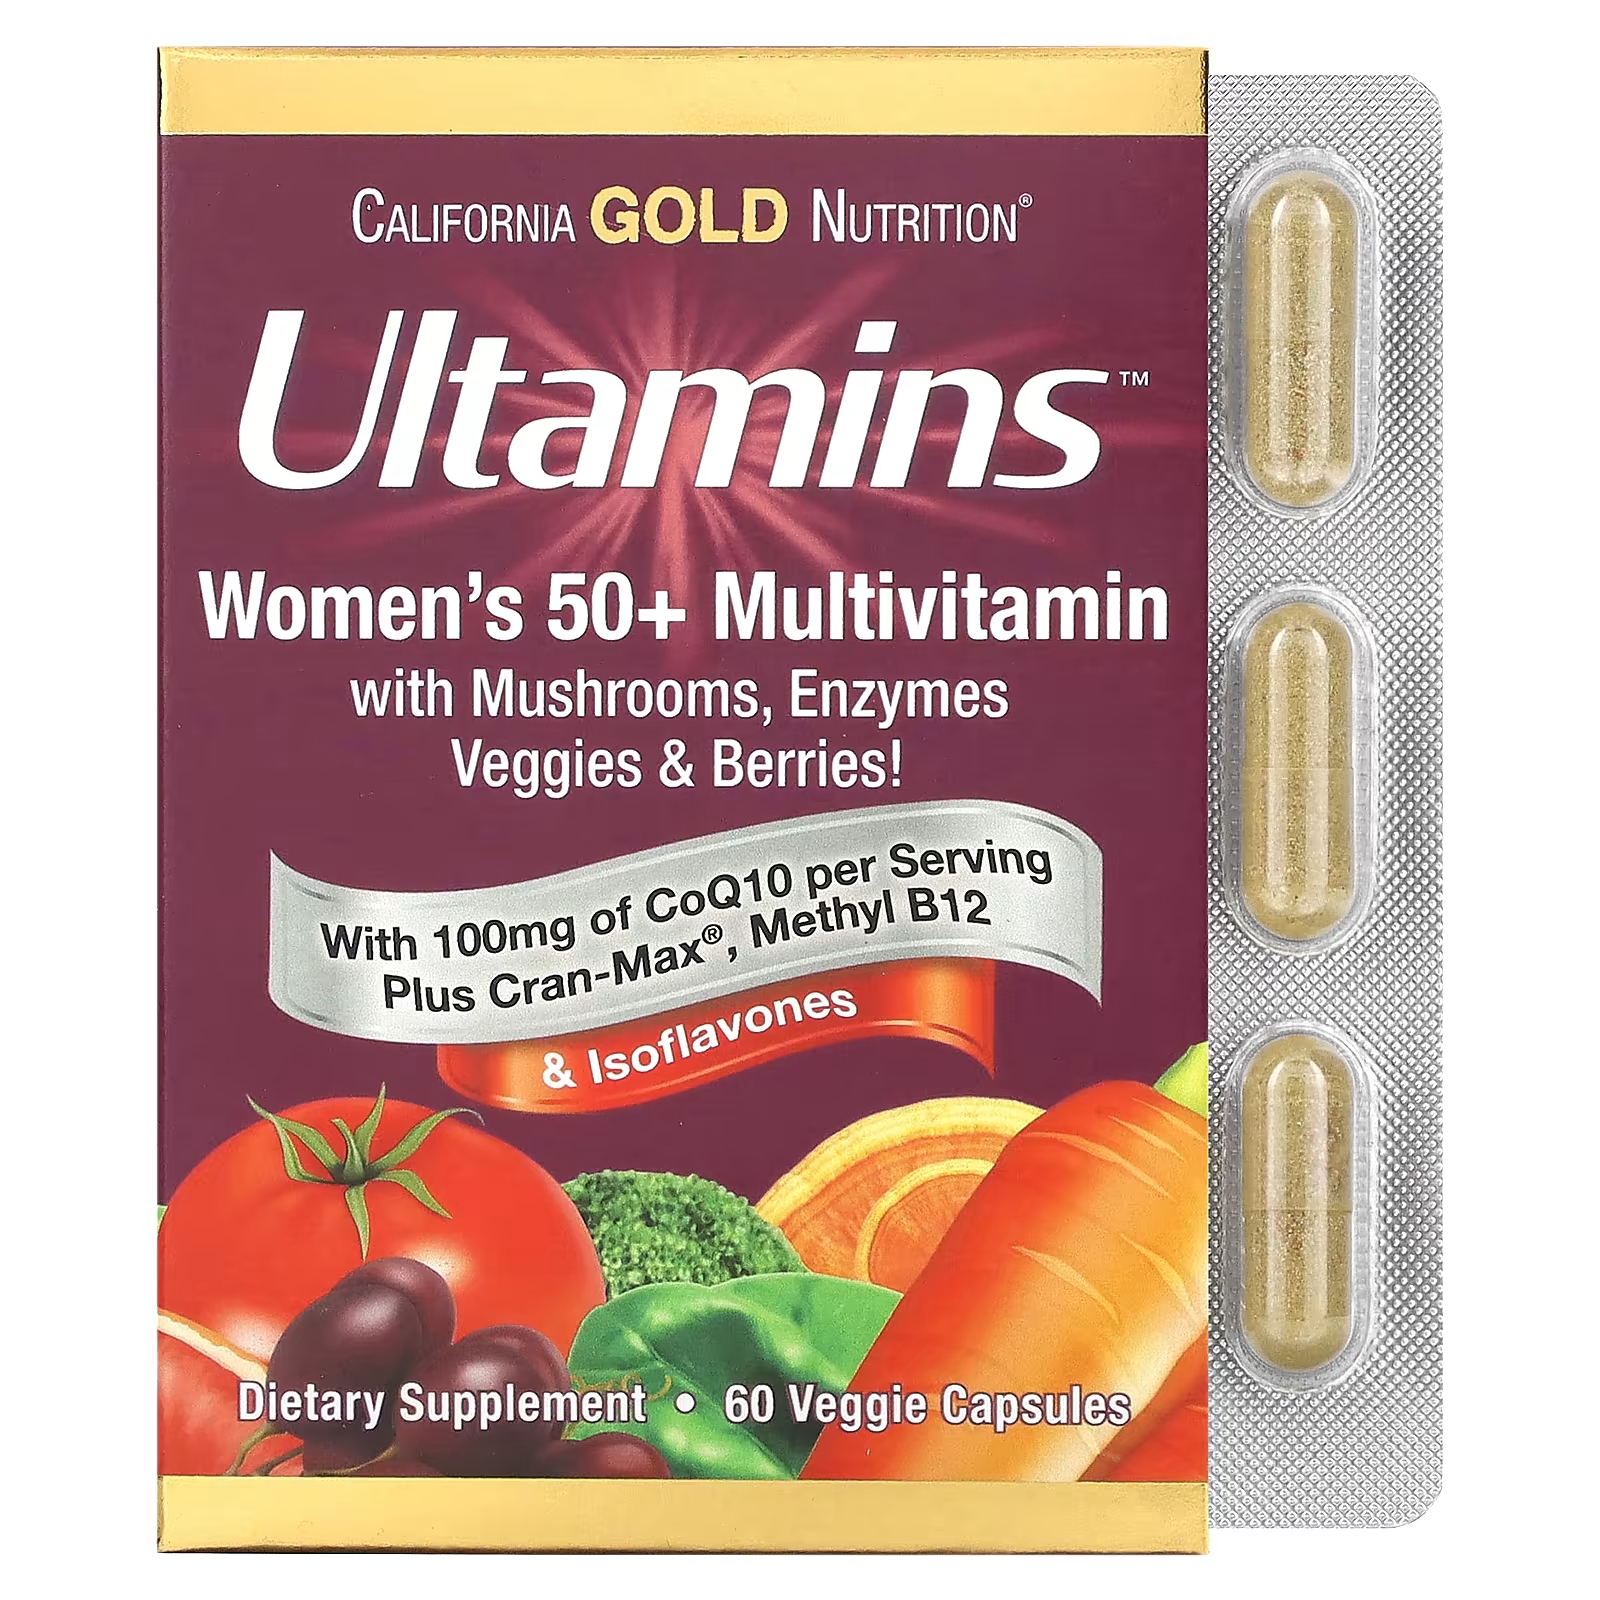 Мультивитамины California Gold Nutrition Ultamins для женщин старше 50 лет с коэнзимом Q10, грибами, ферментами, овощами и ягодами, 60 растительных капсул мультивитамины california gold nutrition ultamins для женщин старше 50 лет с коэнзимом q10 грибами ферментами овощами и ягодами 60 растительных капсул